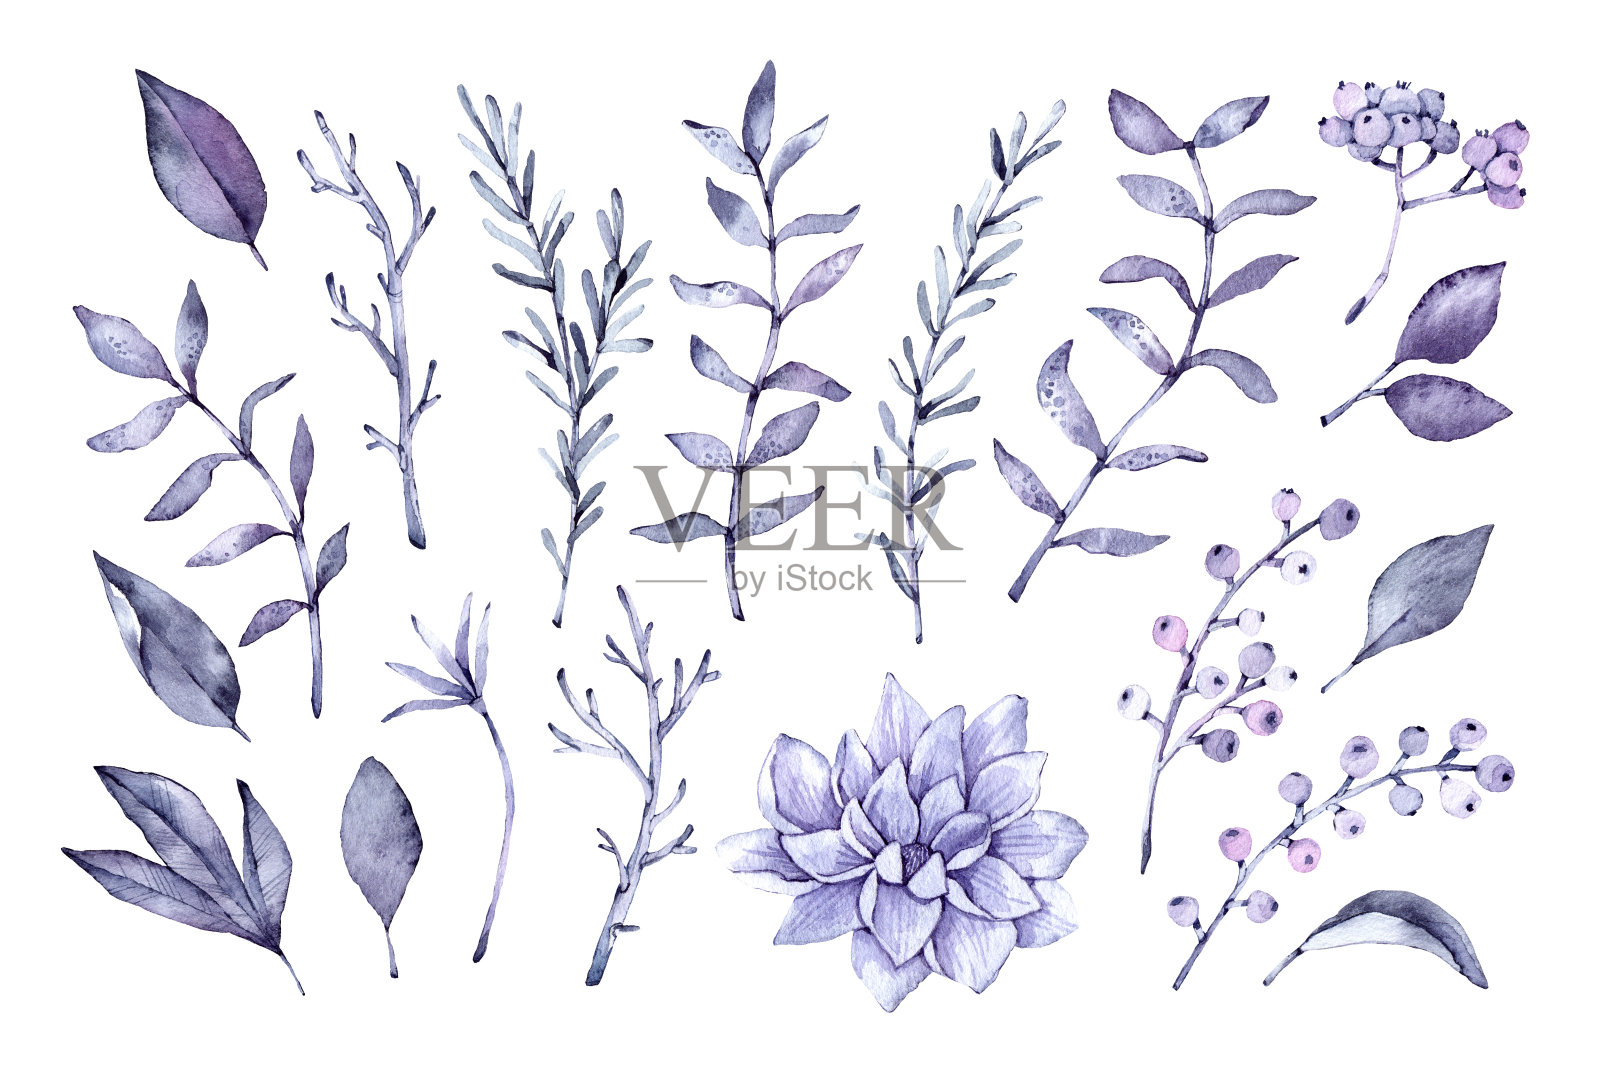 手绘水彩插图。植物剪纸艺术。一组紫罗兰的叶子，香草和树枝。花的设计元素。完美的婚礼邀请，贺卡，博客，海报和更多插画图片素材